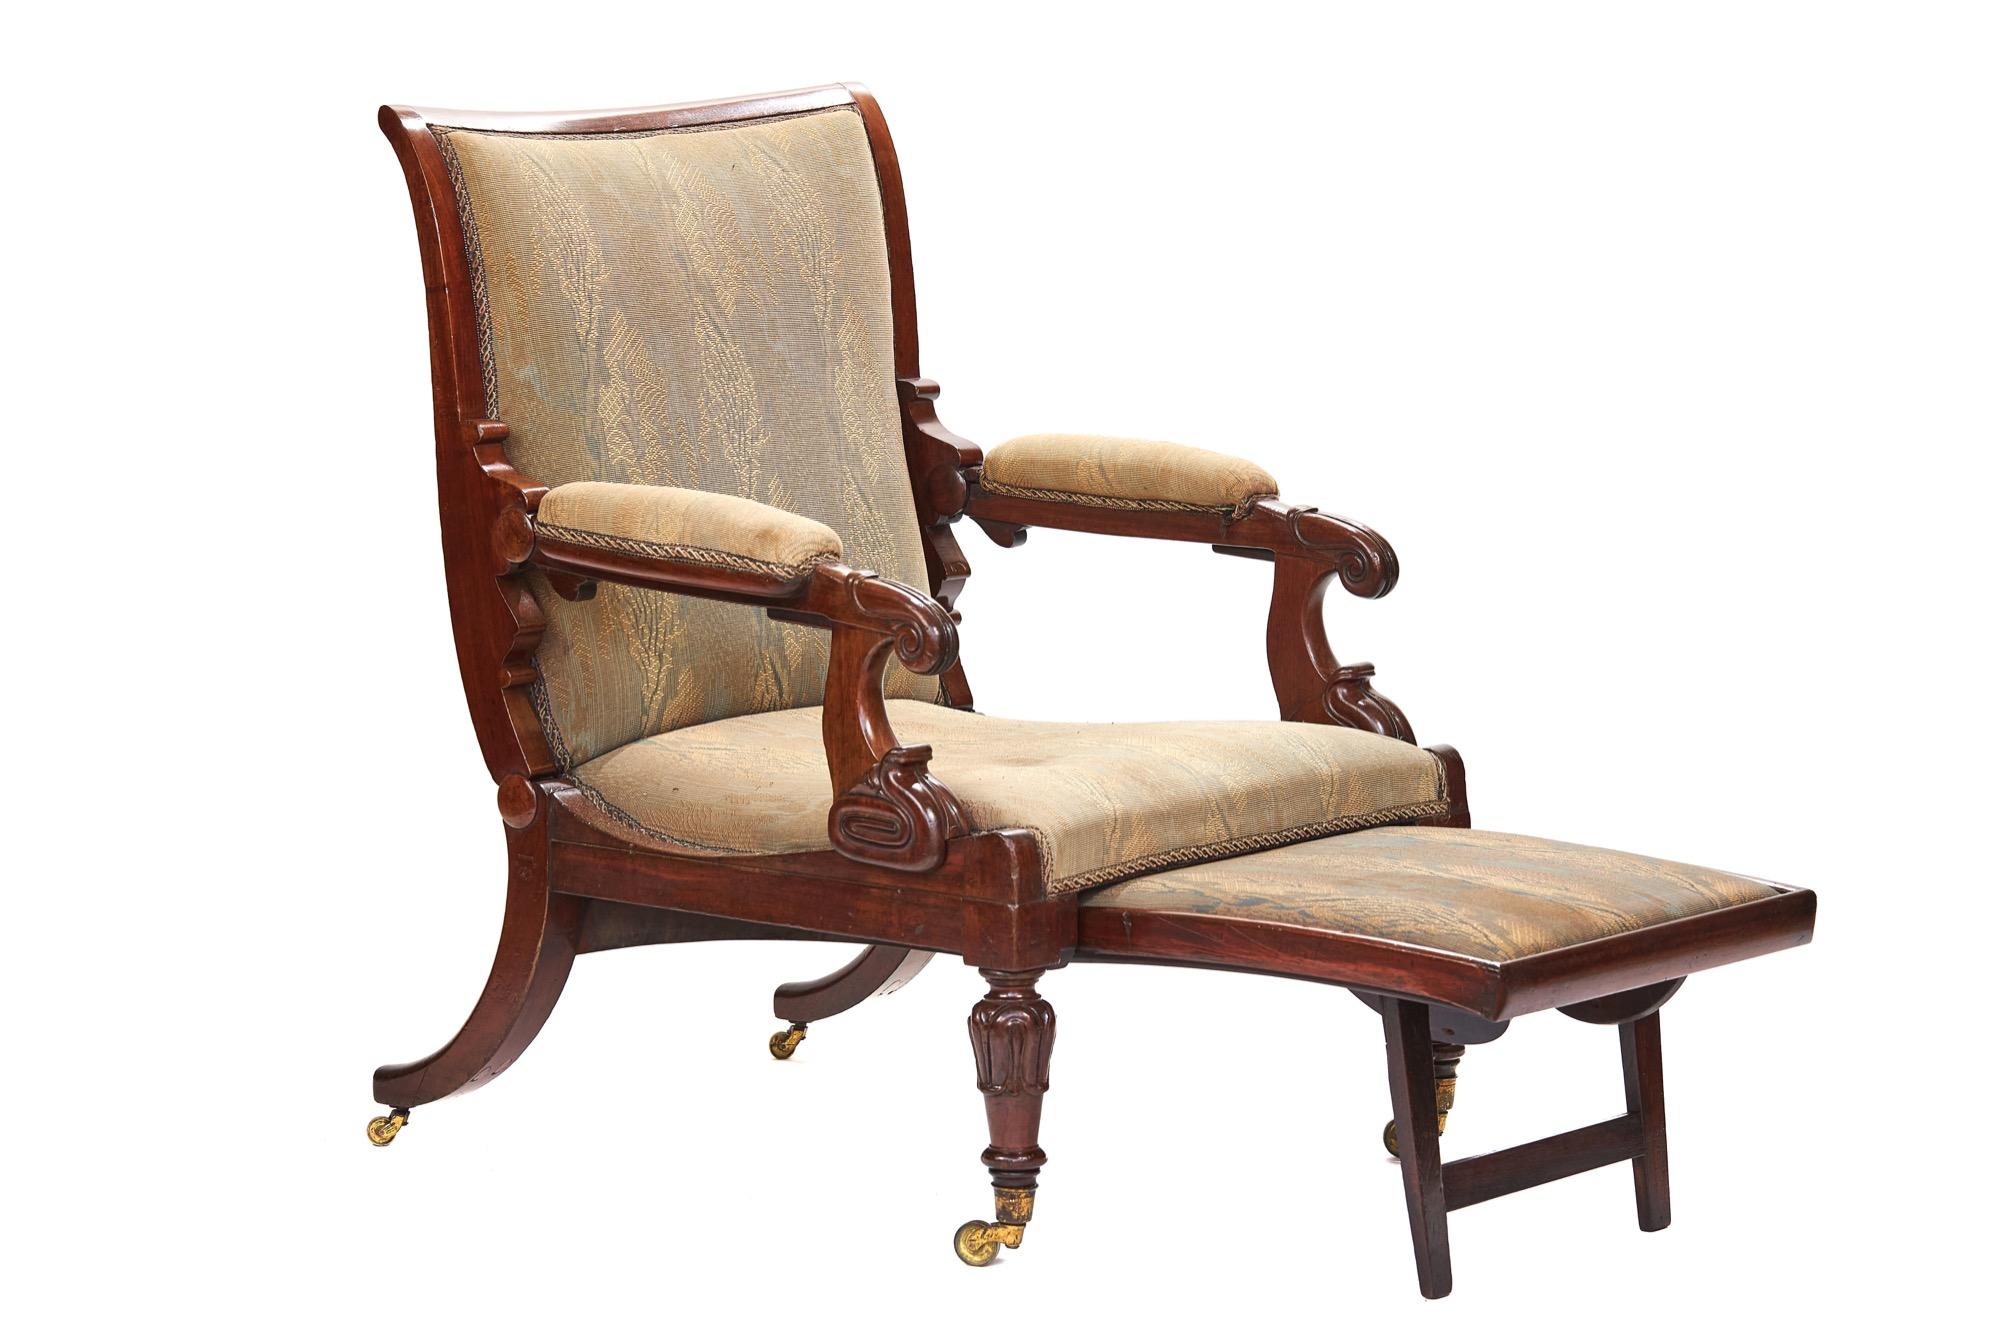 Feines G1V Mahagoni Daws Patent verbessert Liegestuhl um 1830,
Dieser verbesserte Liegesessel wurde um 1830 von Daws patentiert, 
Beschrieben:
[ durch Anheben einer Feder unter der Armlehne des Stuhls. Wo die Hand ruht, 
Es kann in eine Couch